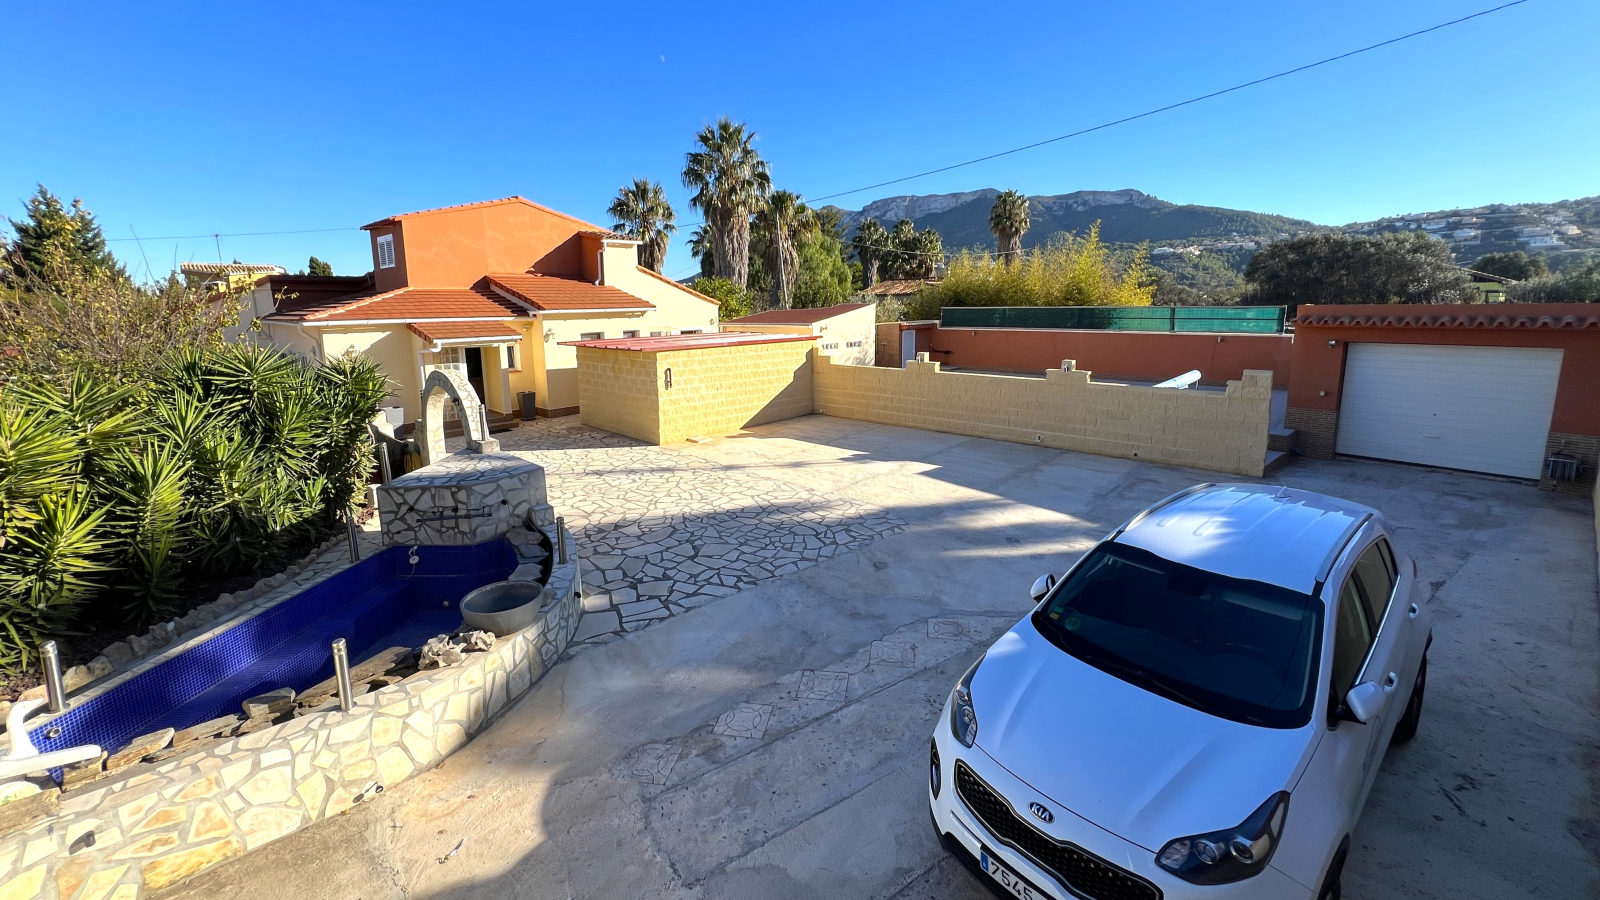 Villa op een rustige locatie met hoge technische voorzieningen, verwarmd zwembad, garage, enz.